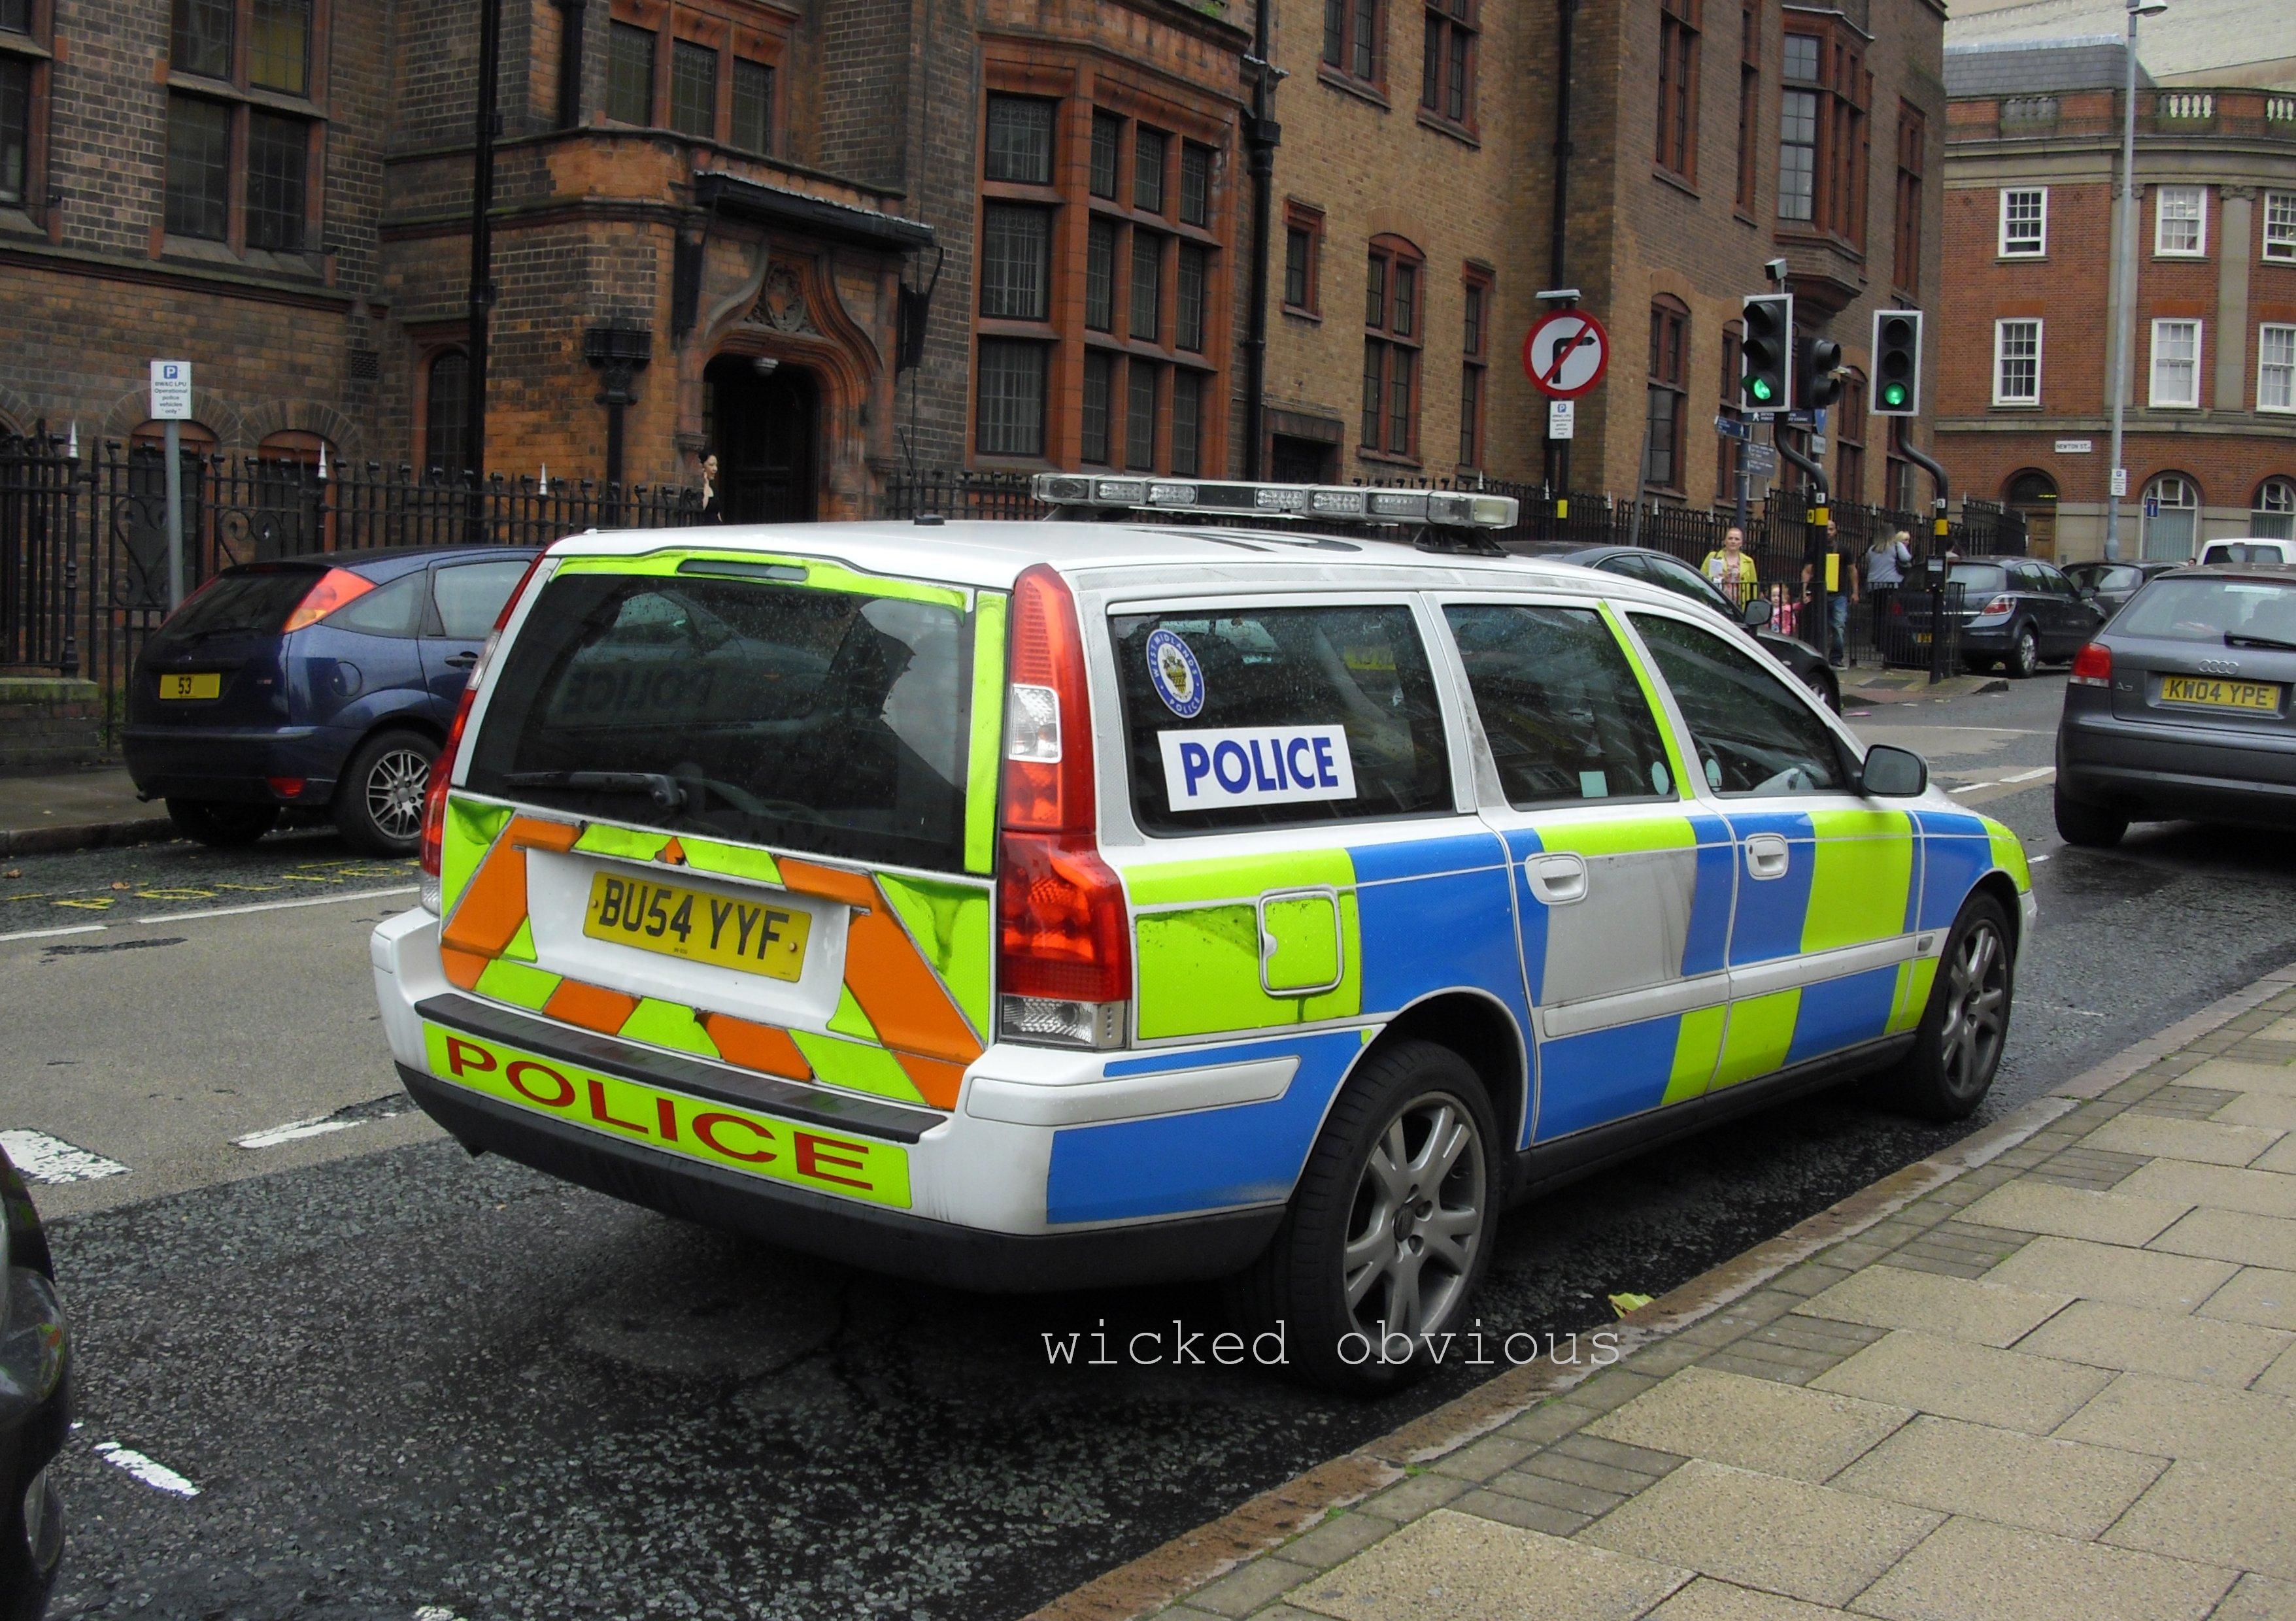 West Midlands Police Volvo V70 BU54 YYF | Flickr - Photo Sharing!